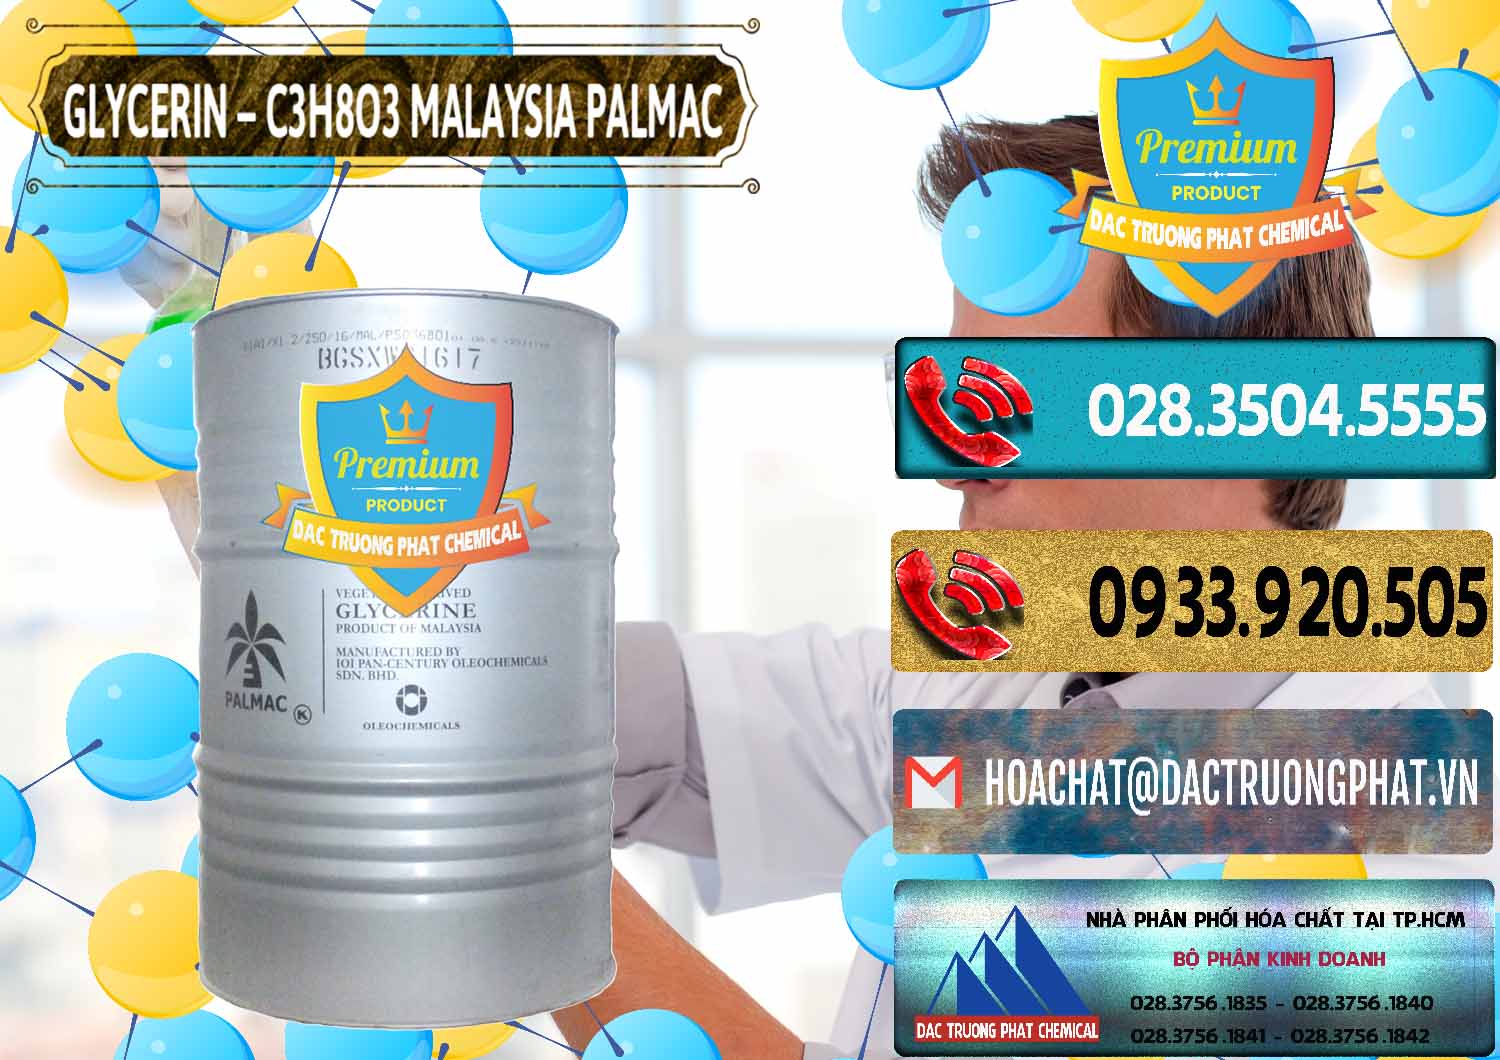 Cty bán _ cung ứng Glycerin – C3H8O3 99.7% Malaysia Palmac - 0067 - Đơn vị kinh doanh & cung cấp hóa chất tại TP.HCM - hoachatdetnhuom.com